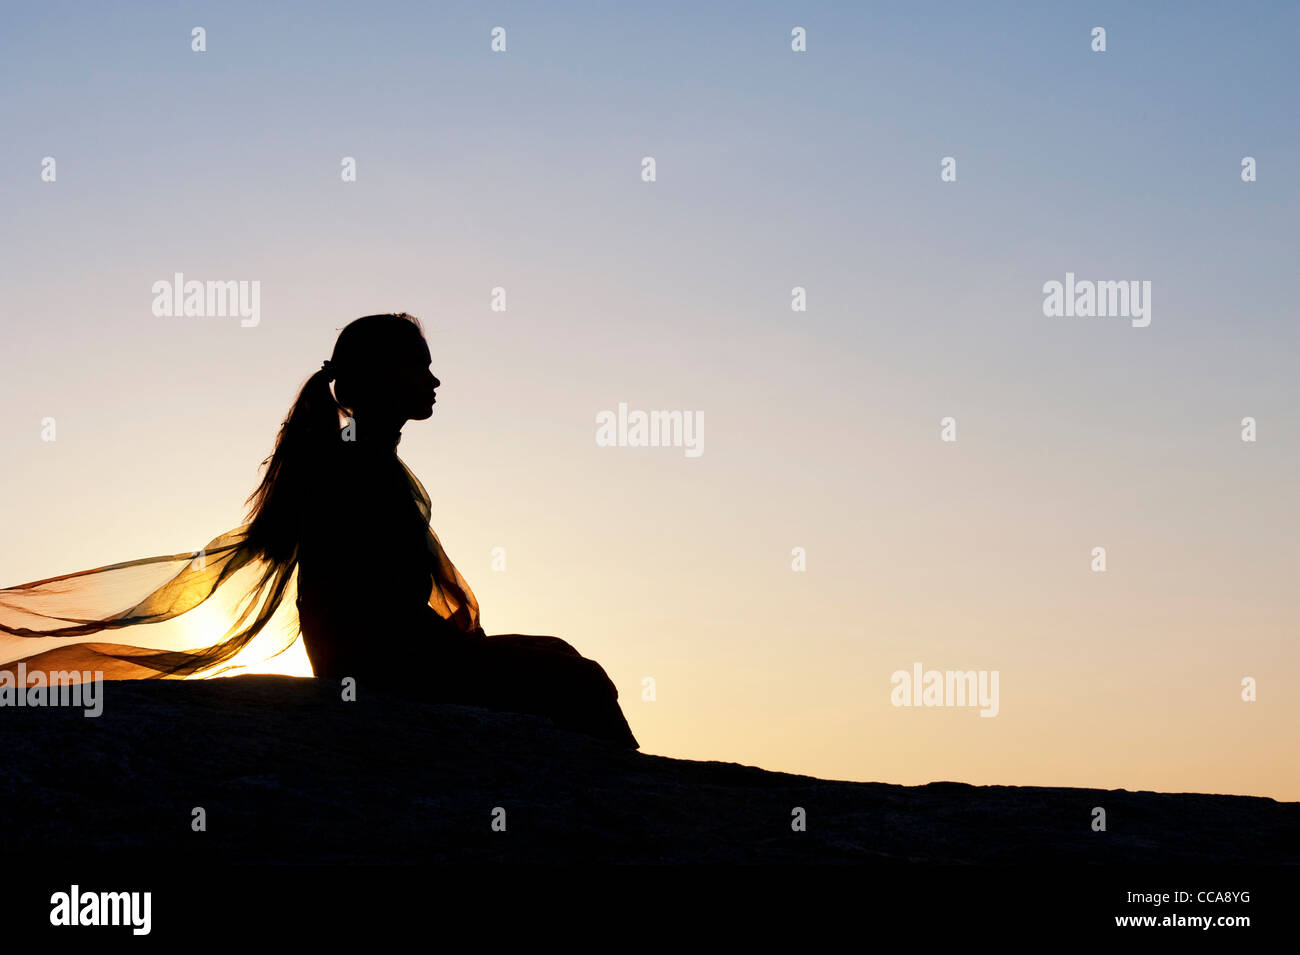 Indisches Mädchen ganz allein auf einem Stein saß bei Sonnenuntergang. Silhouette. Andhra Pradesh, Indien Stockfoto